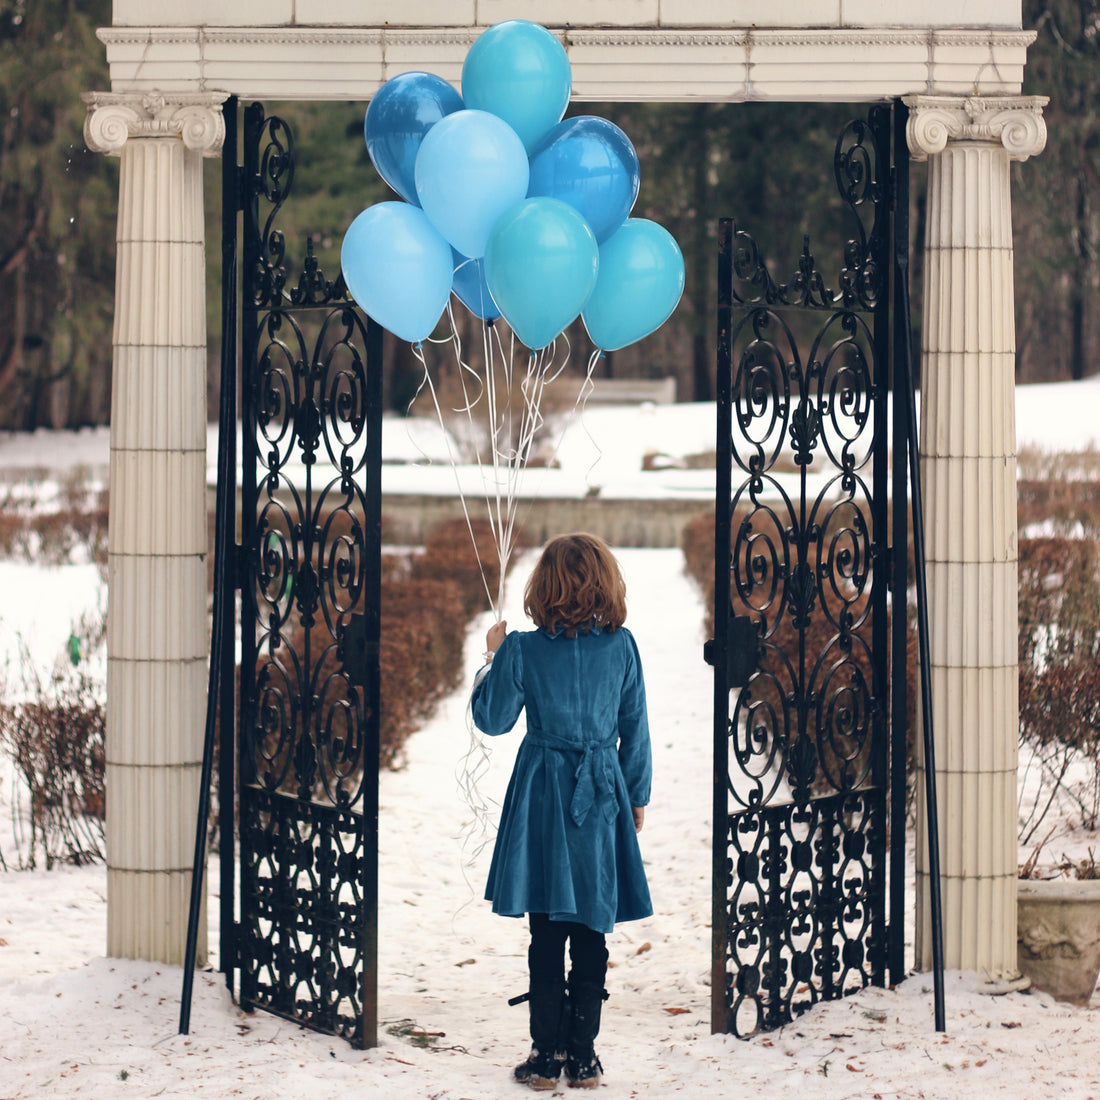 Our blue velvet dress on a girl holding balloons in the snow